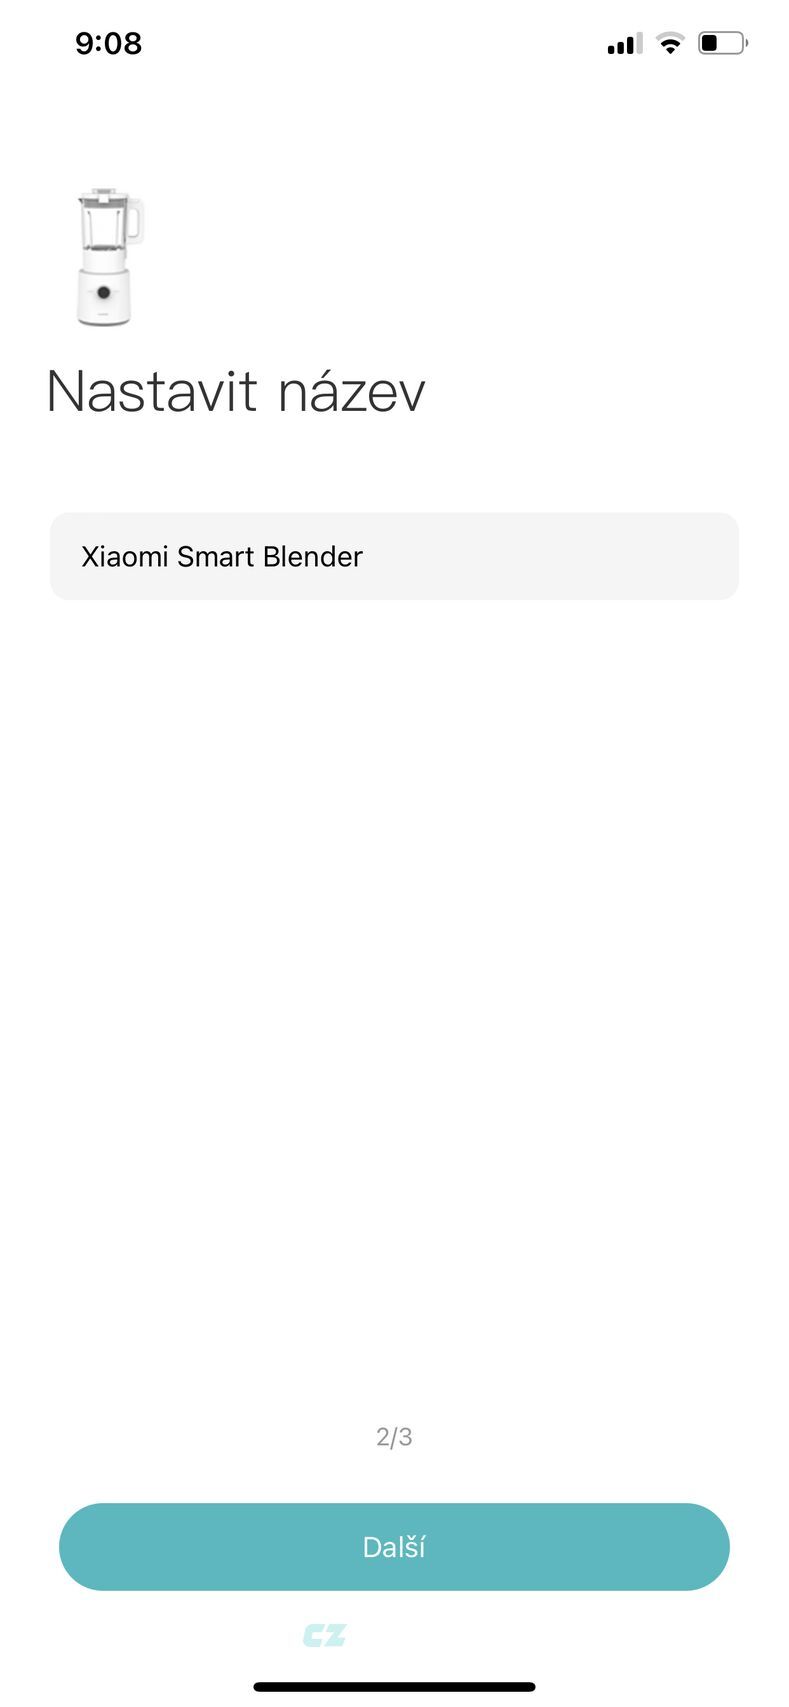 Xiaomi Smart Blender